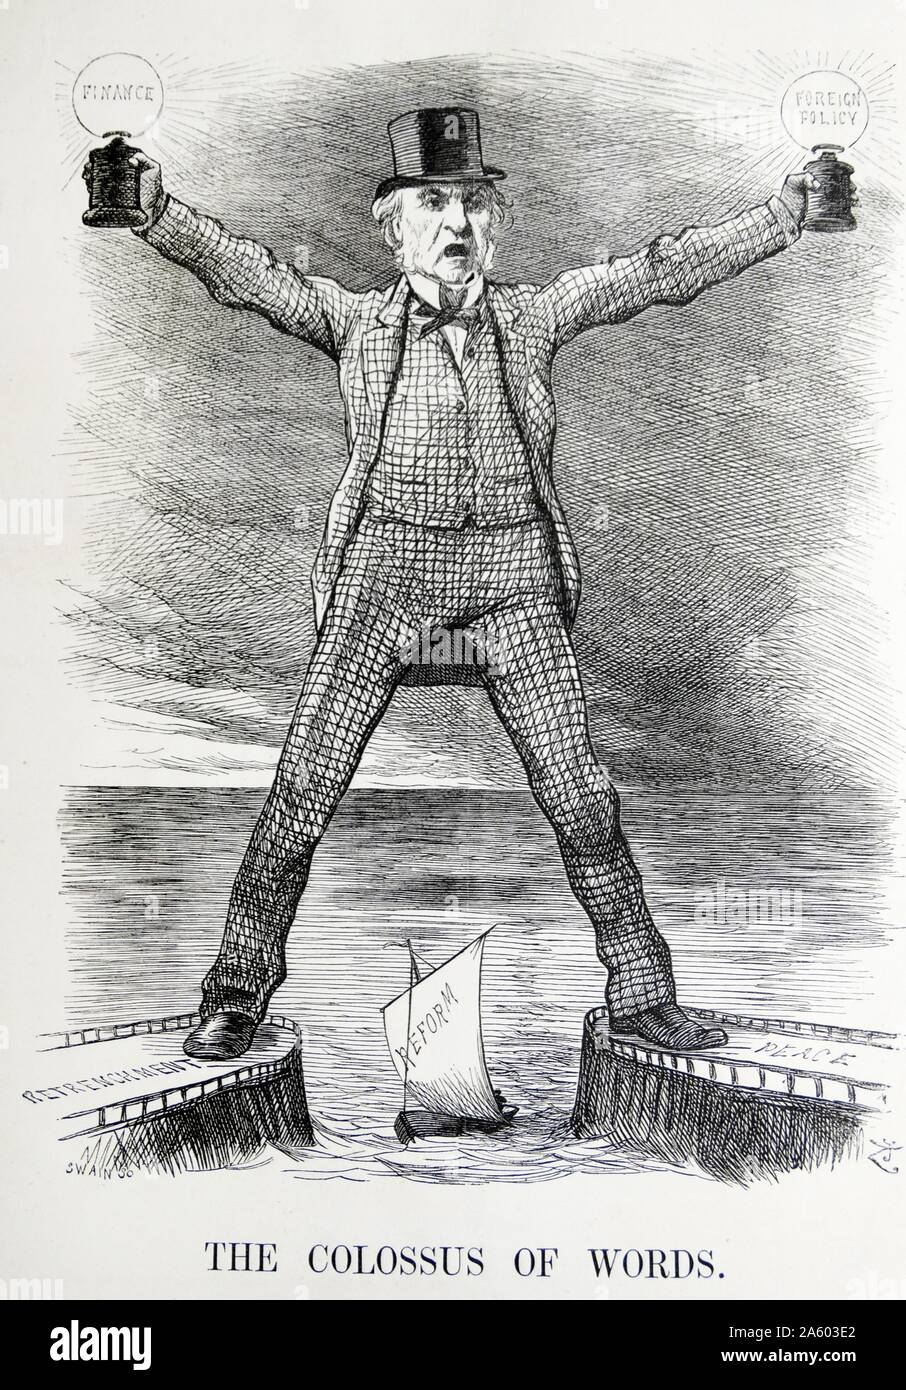 Politische Satire Darstellung William Ewart Gladstone (1809-1898) und Benjamin Disraeli (1804-1881), beide ehemalige Premierminister von Großbritannien. Von Sir John Tenniel (1820-1914), englischer Illustrator, grafische Humorist und Karikaturist. Vom 19. Jahrhundert Stockfoto